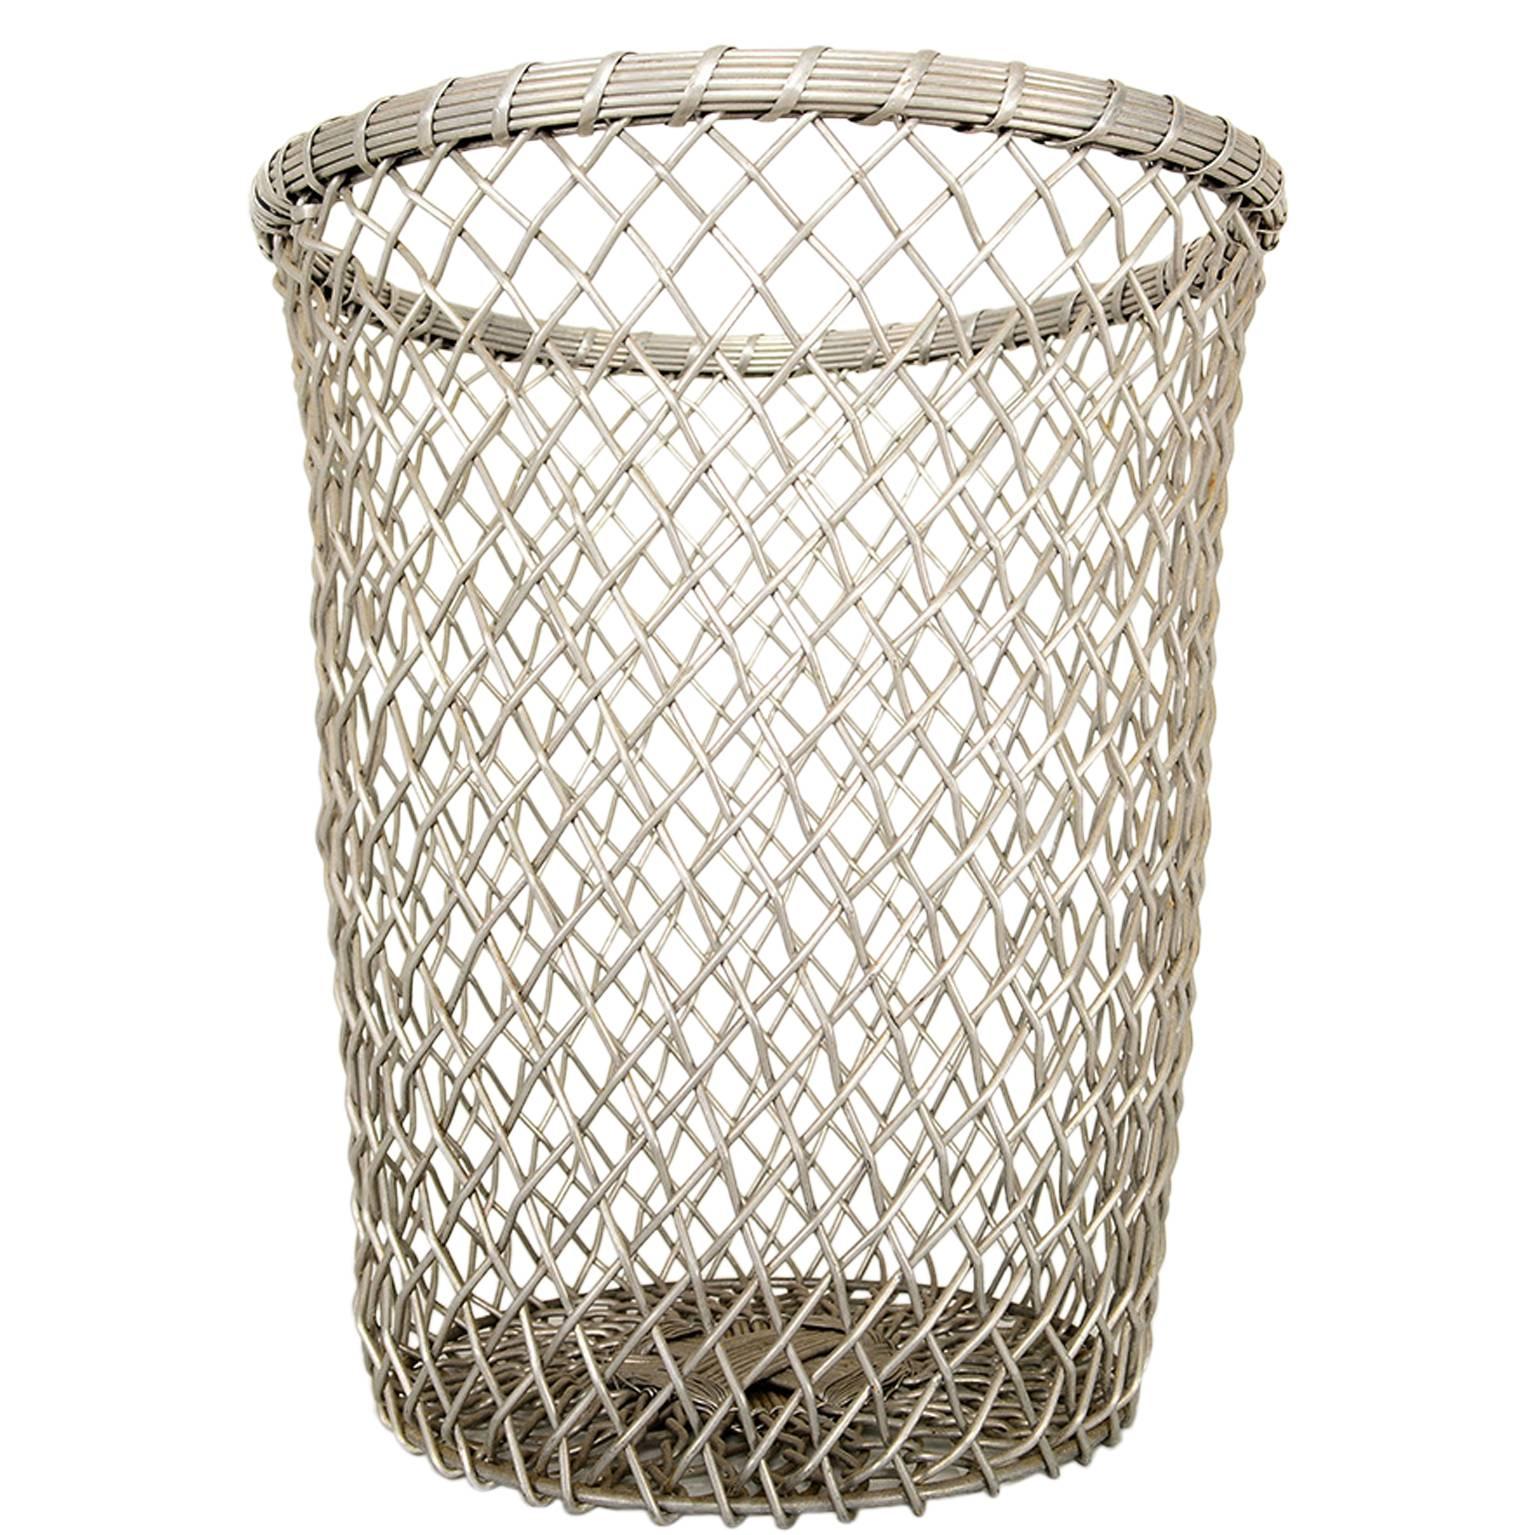 Aluminum Decorative Waste Basket